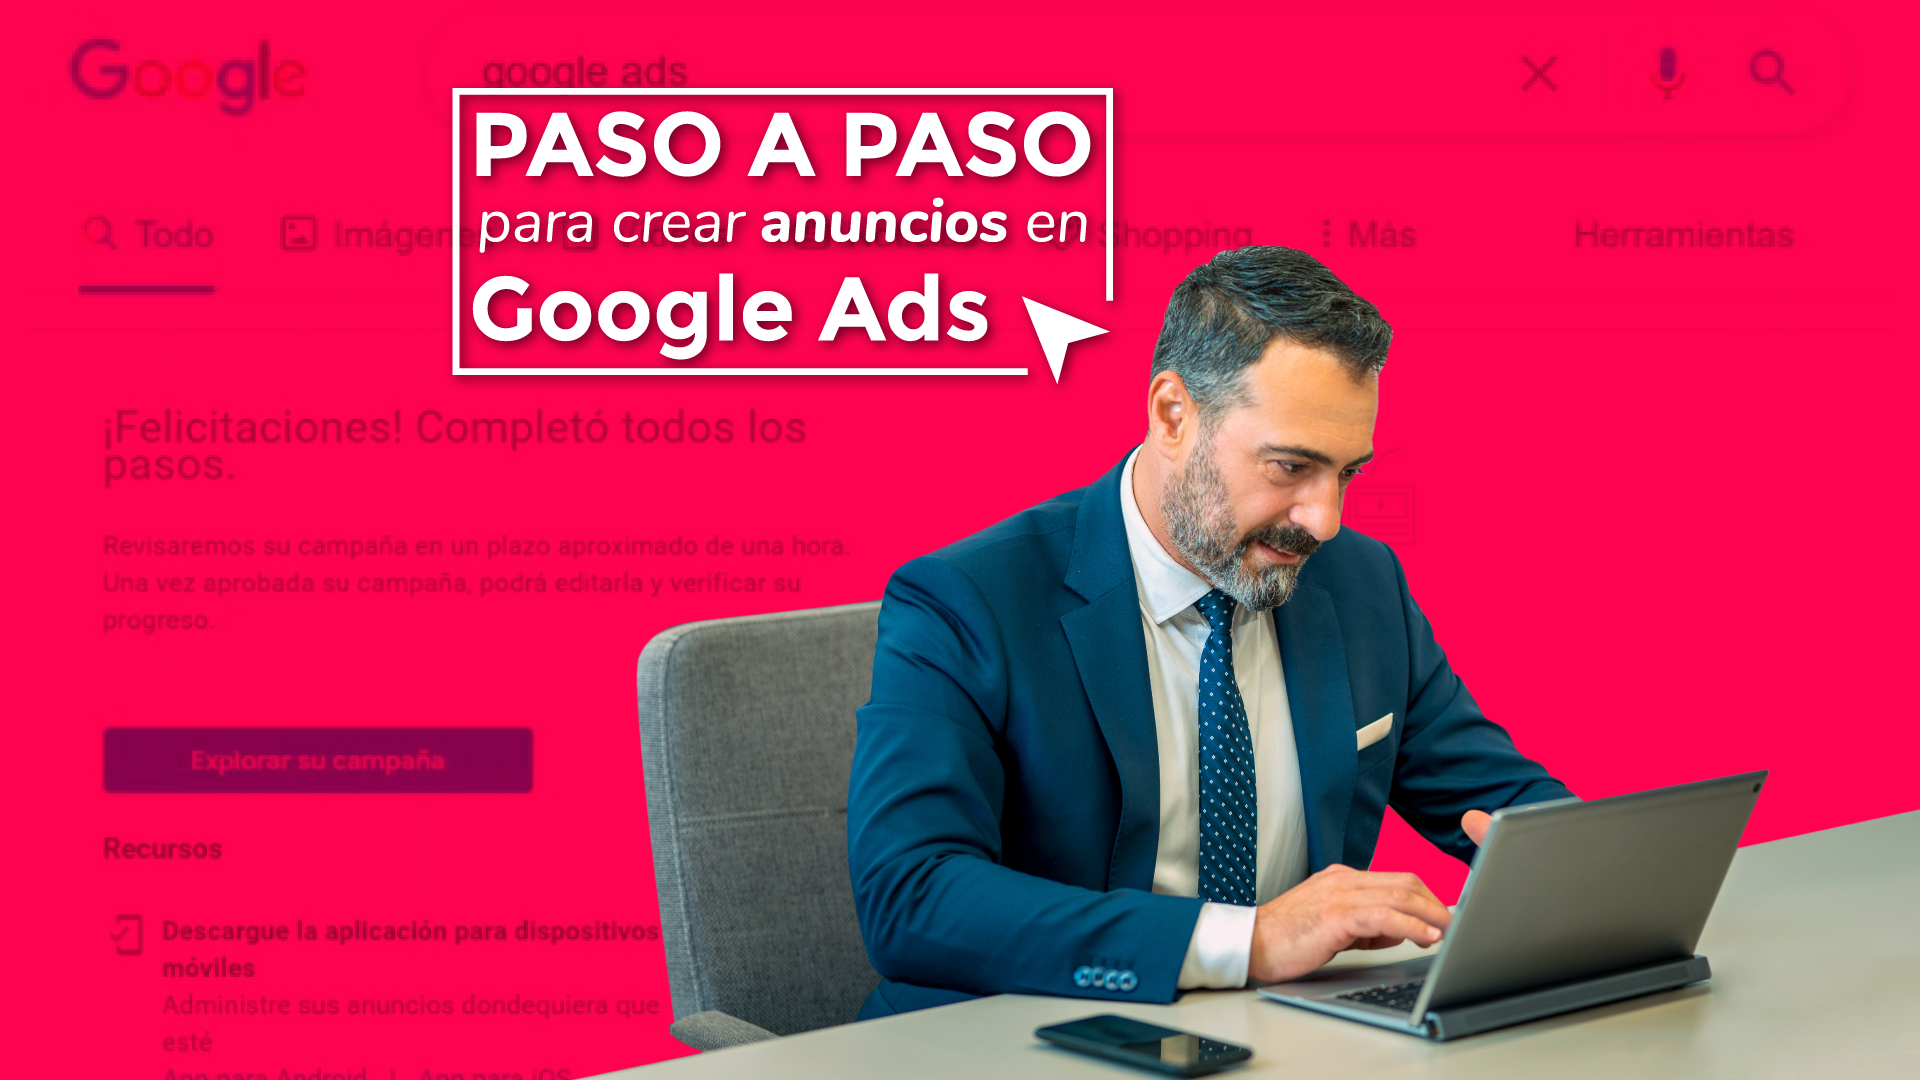 PASO A PASO PARA CREAR ANUNCIOS EN GOOGLE ADS